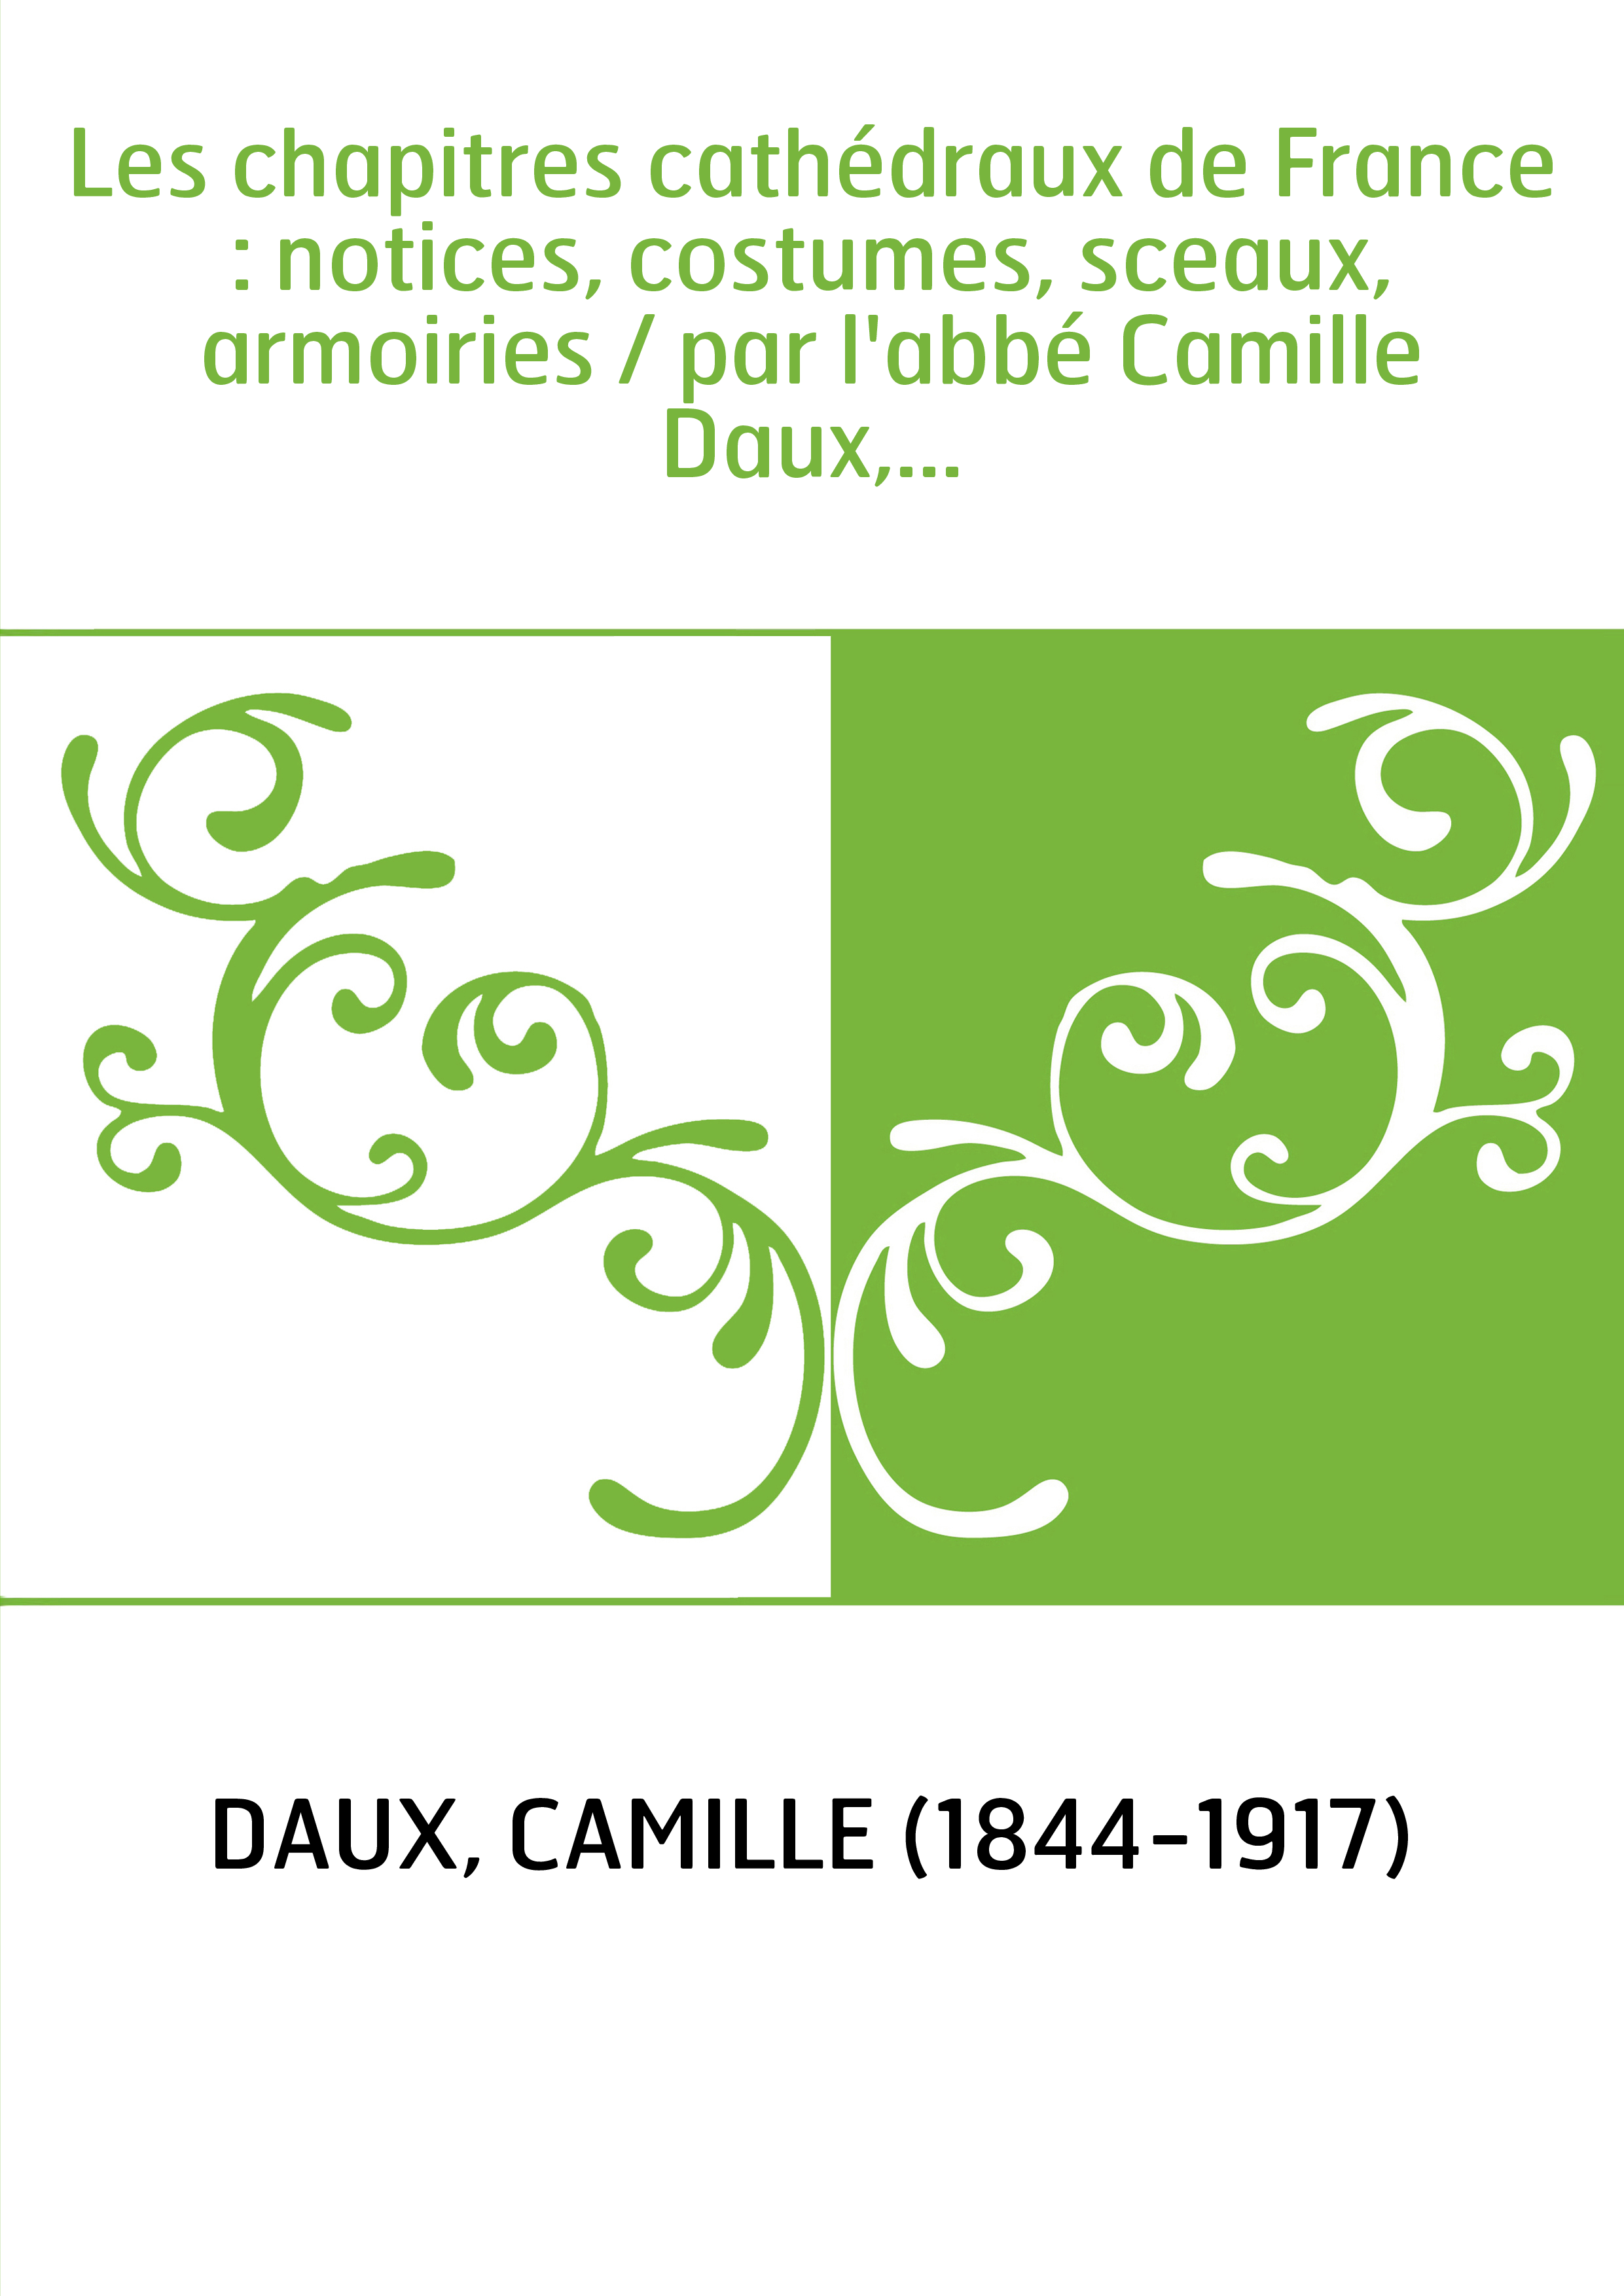 Les chapitres cathédraux de France : notices, costumes, sceaux, armoiries / par l'abbé Camille Daux,...